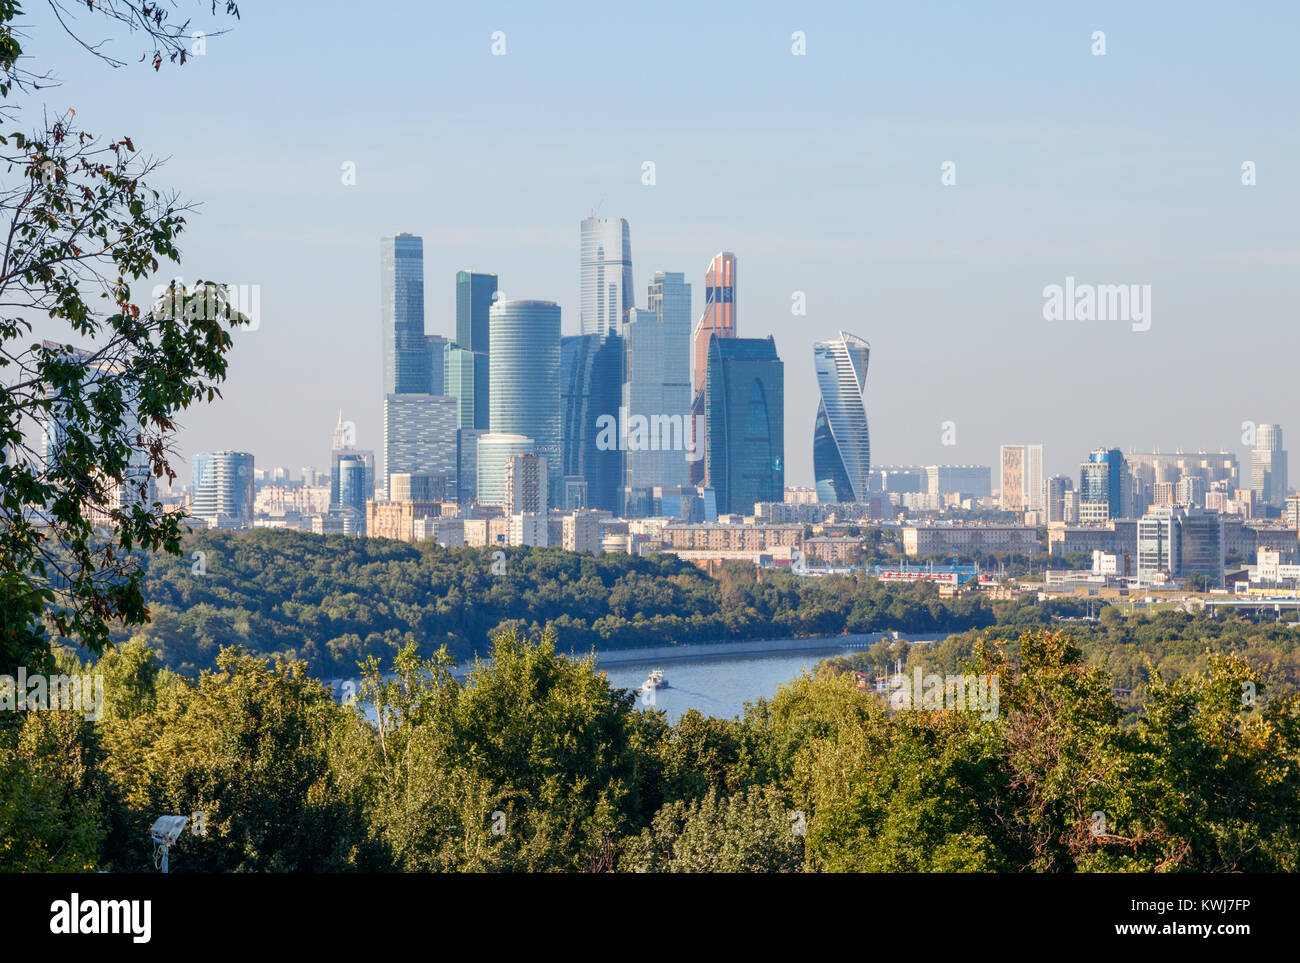 Skyline von Moskau mit den Wolkenkratzern der Moscow International Business Center (MIBC), Russland. Stockfoto